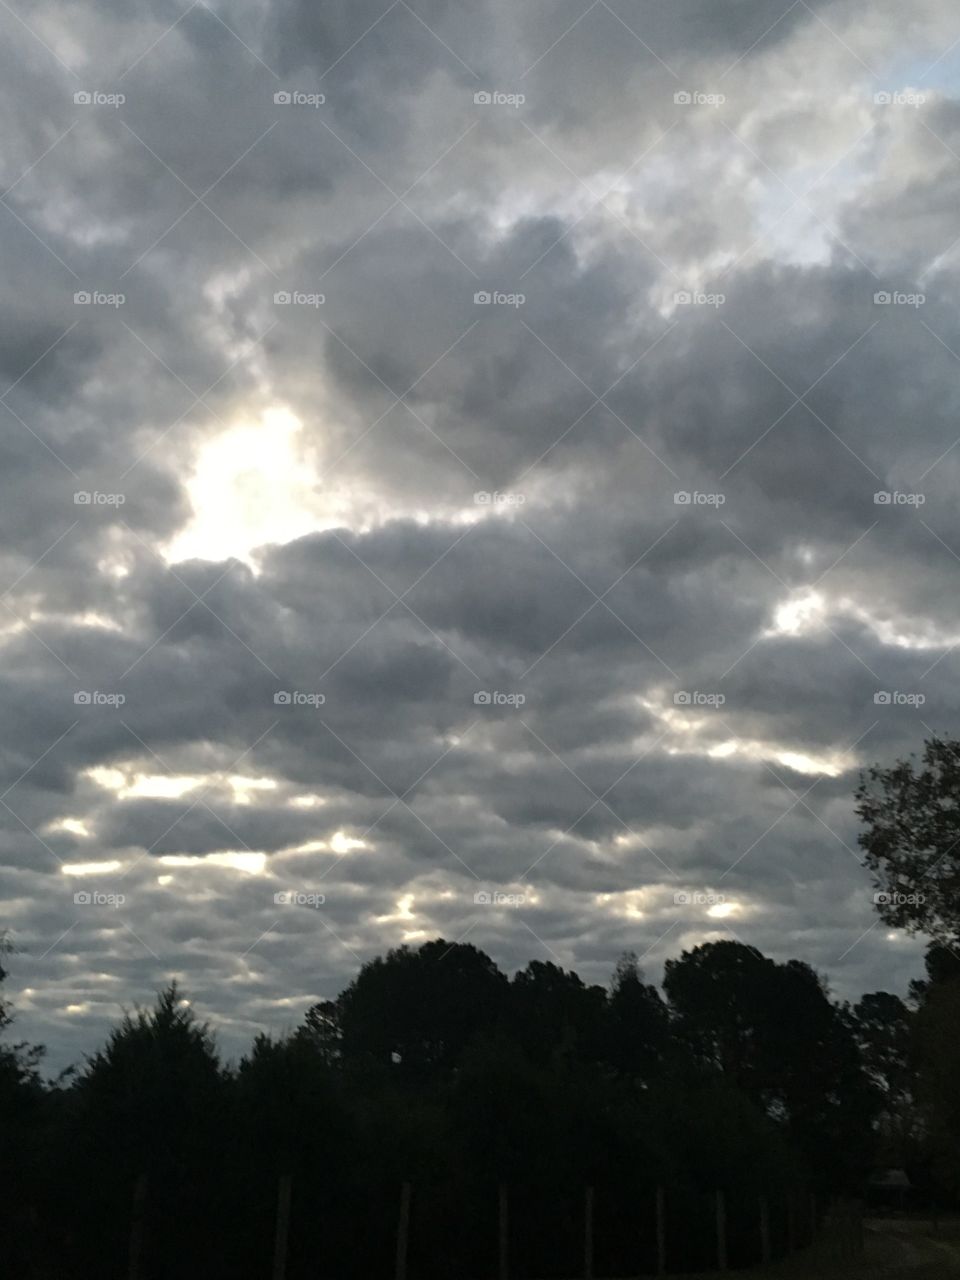 Clouds blocking sun